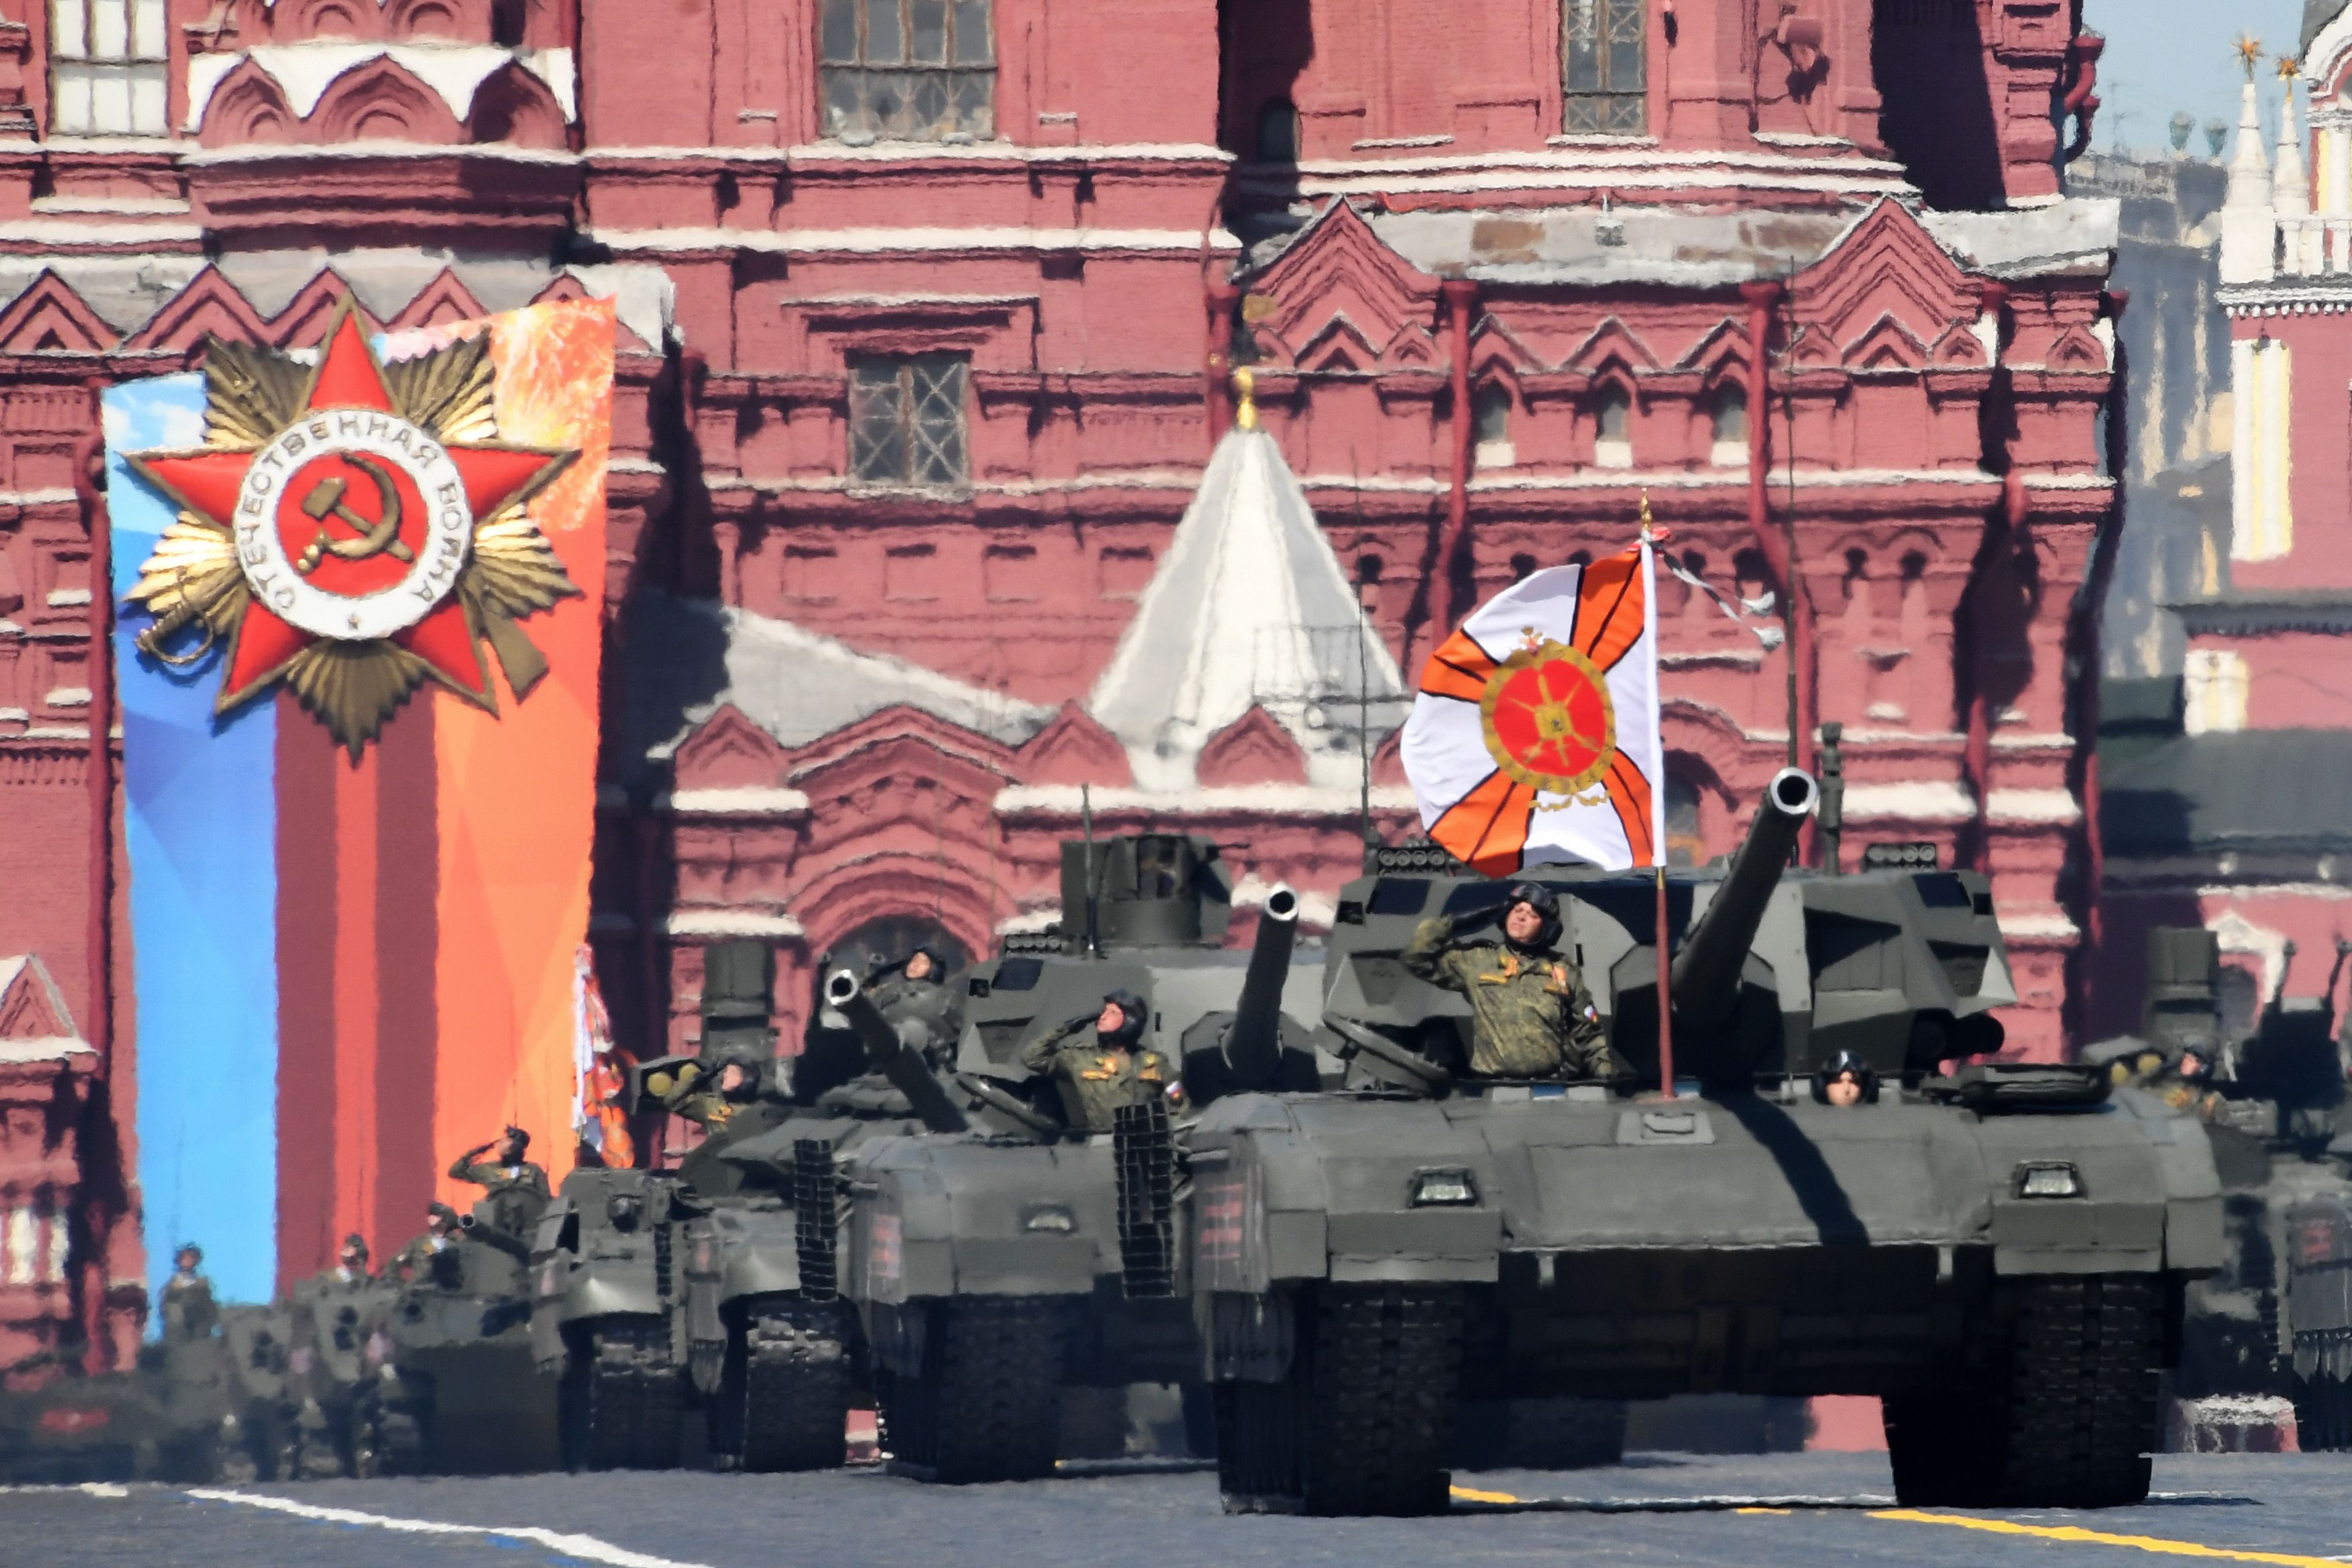 Russia's new T-14 Armata battle tank debuts in Ukraine: Report